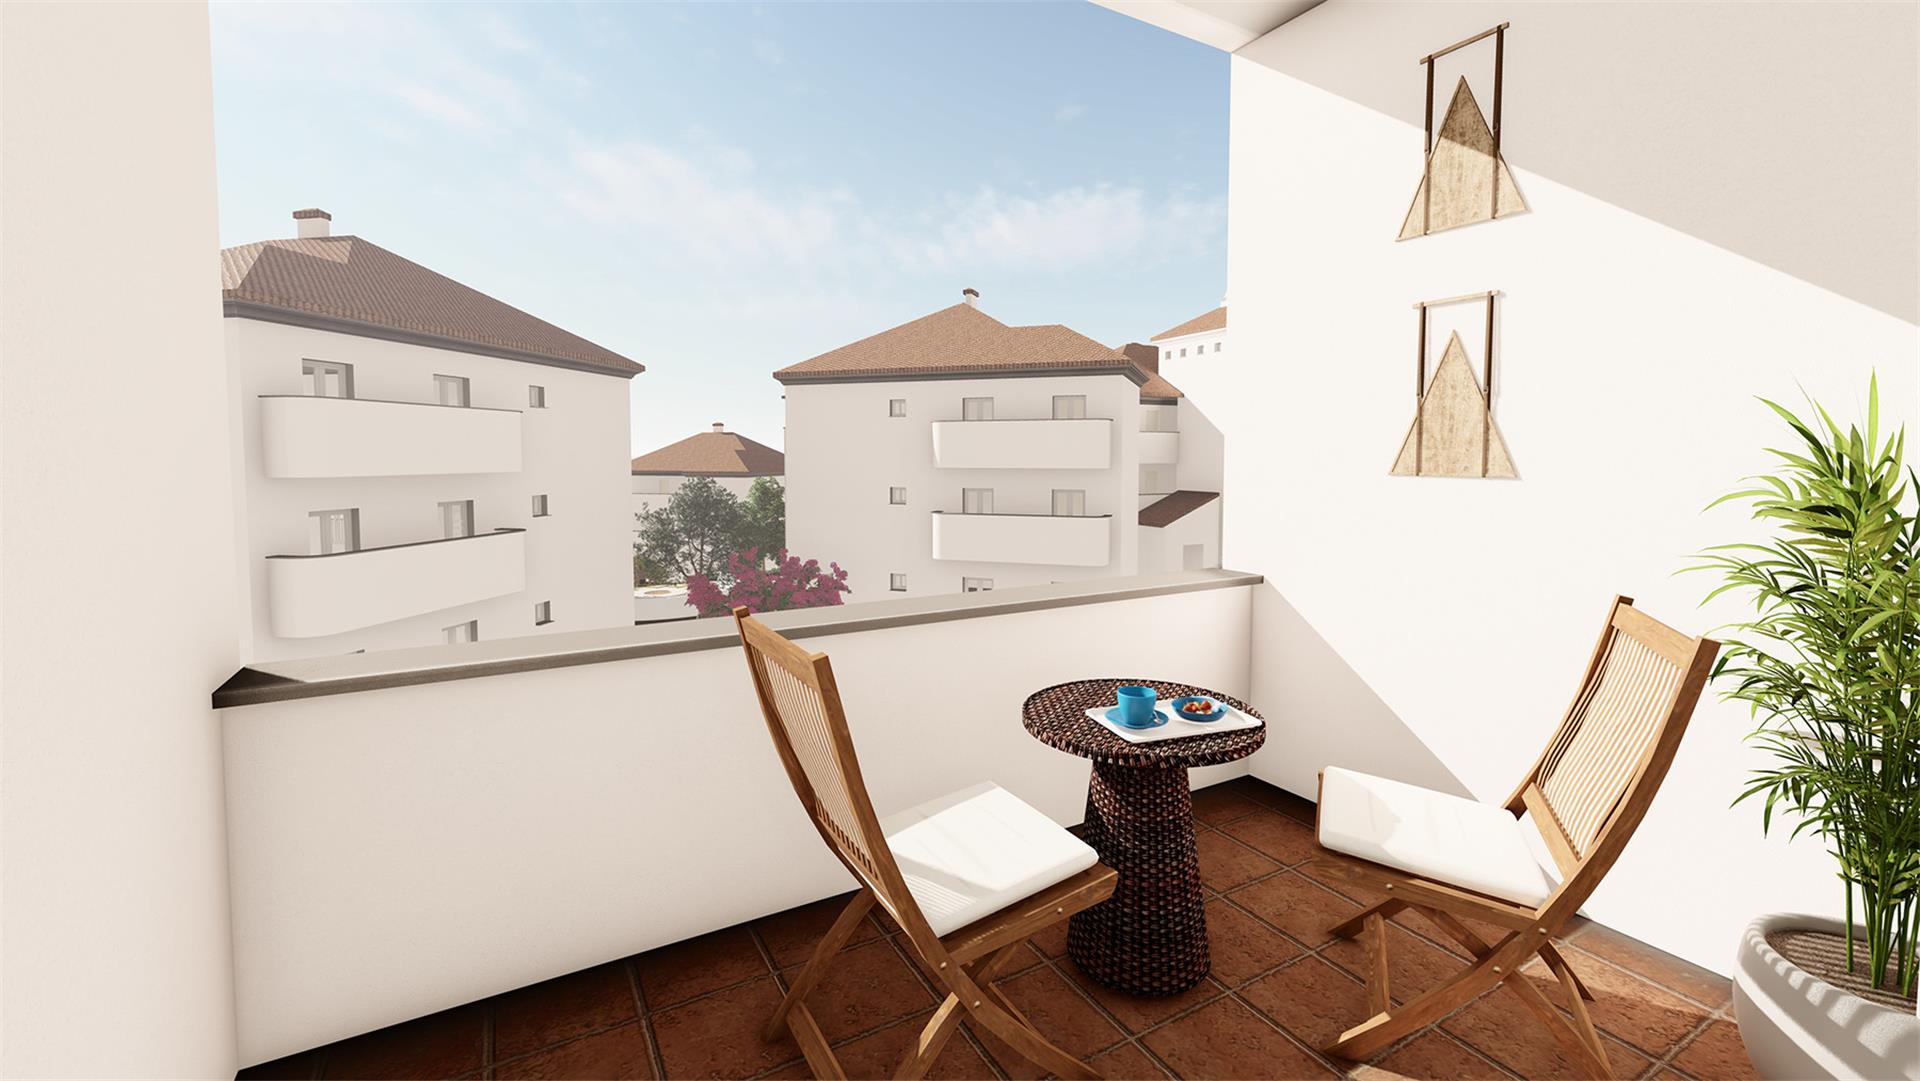 Apartamento de 2 dormitorios a estrenar en Costa del Sol al precio increíble - mibgroup.es